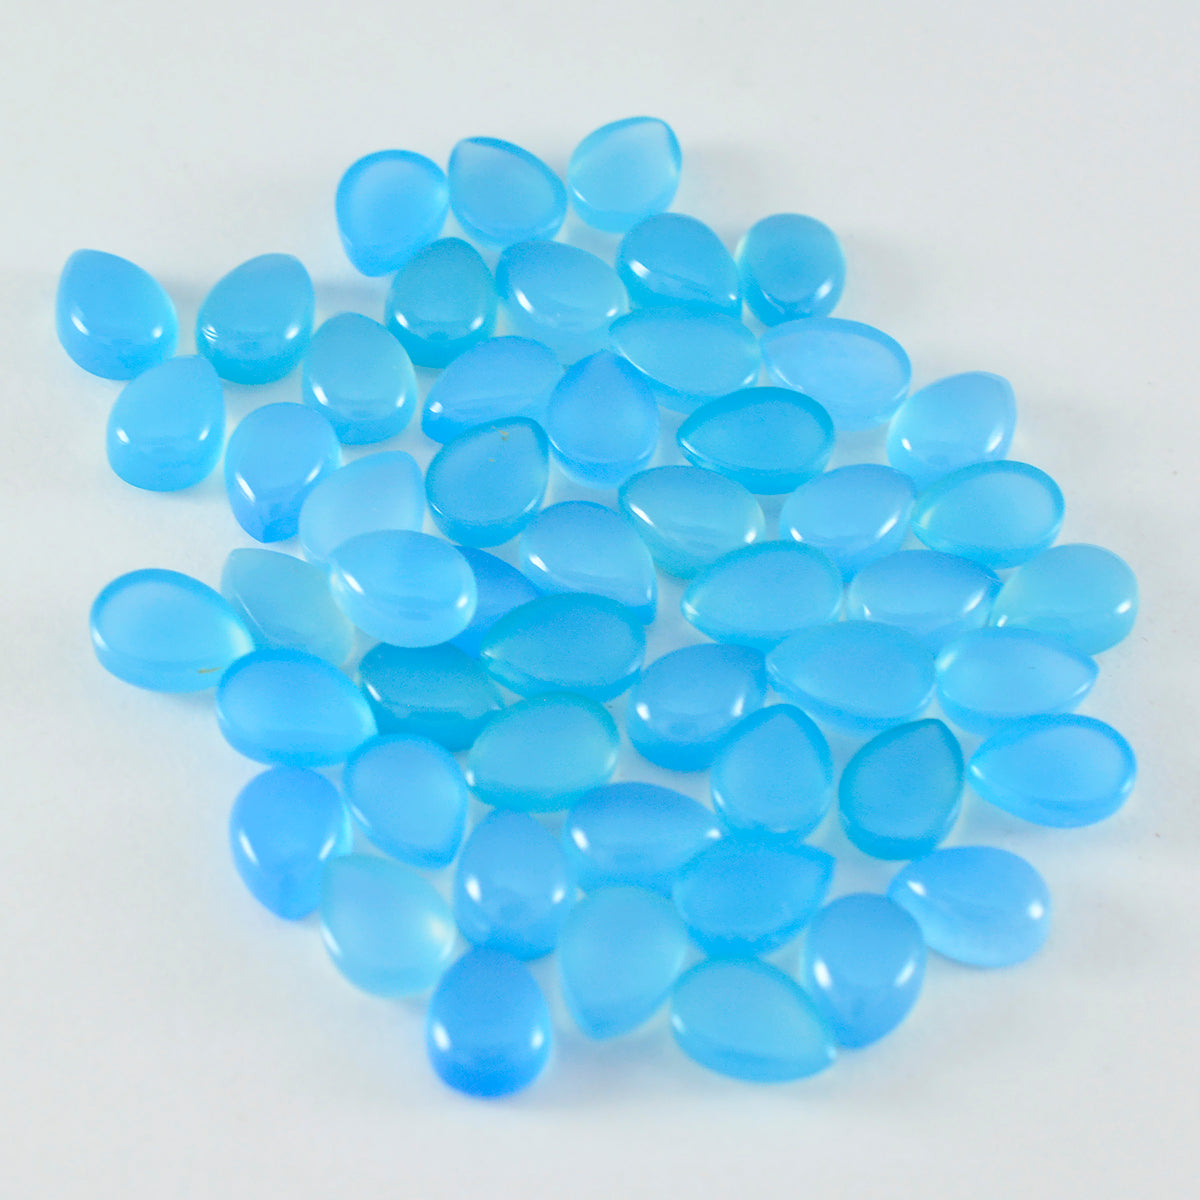 Riyogems 1 pieza cabujón de Calcedonia azul 5X7 mm forma de pera calidad AA gema suelta